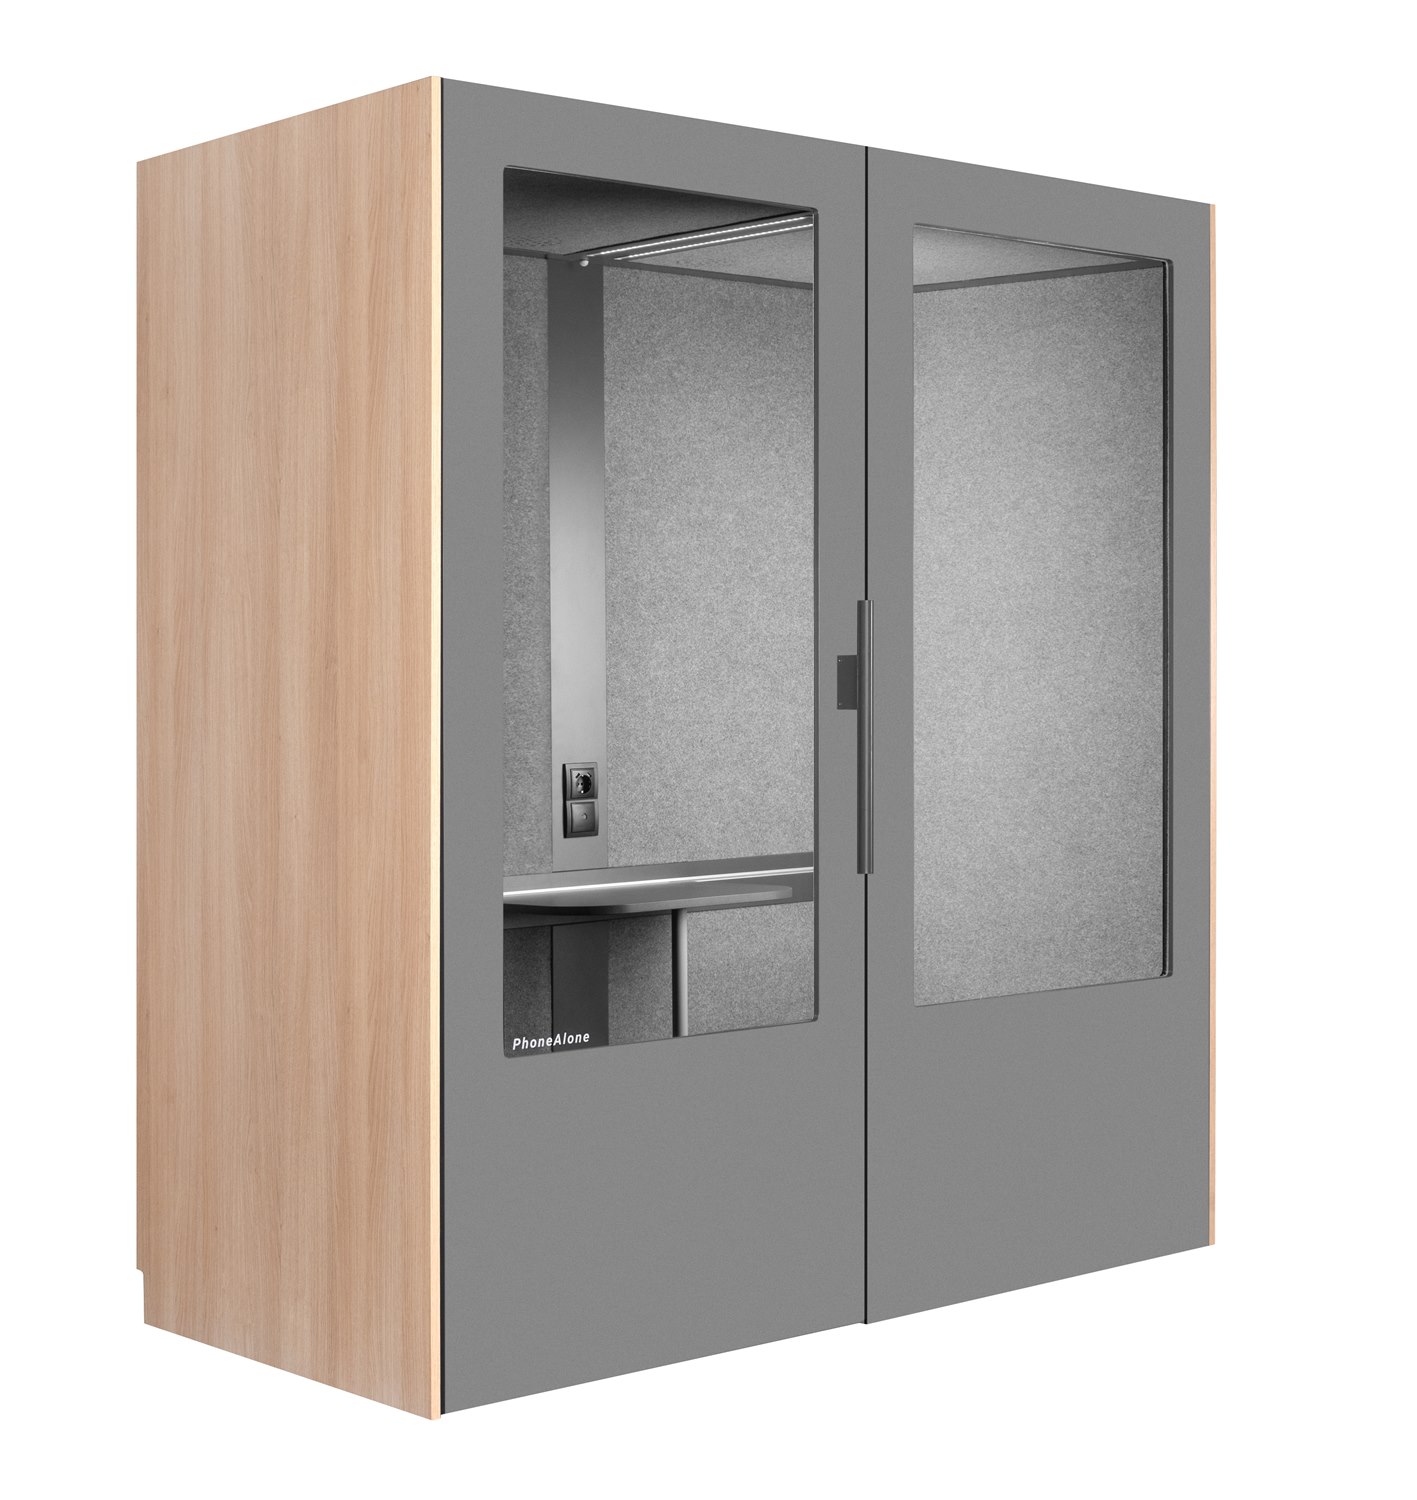 PhoneAlone Dubbelbox tyst rum ek med grå dörr